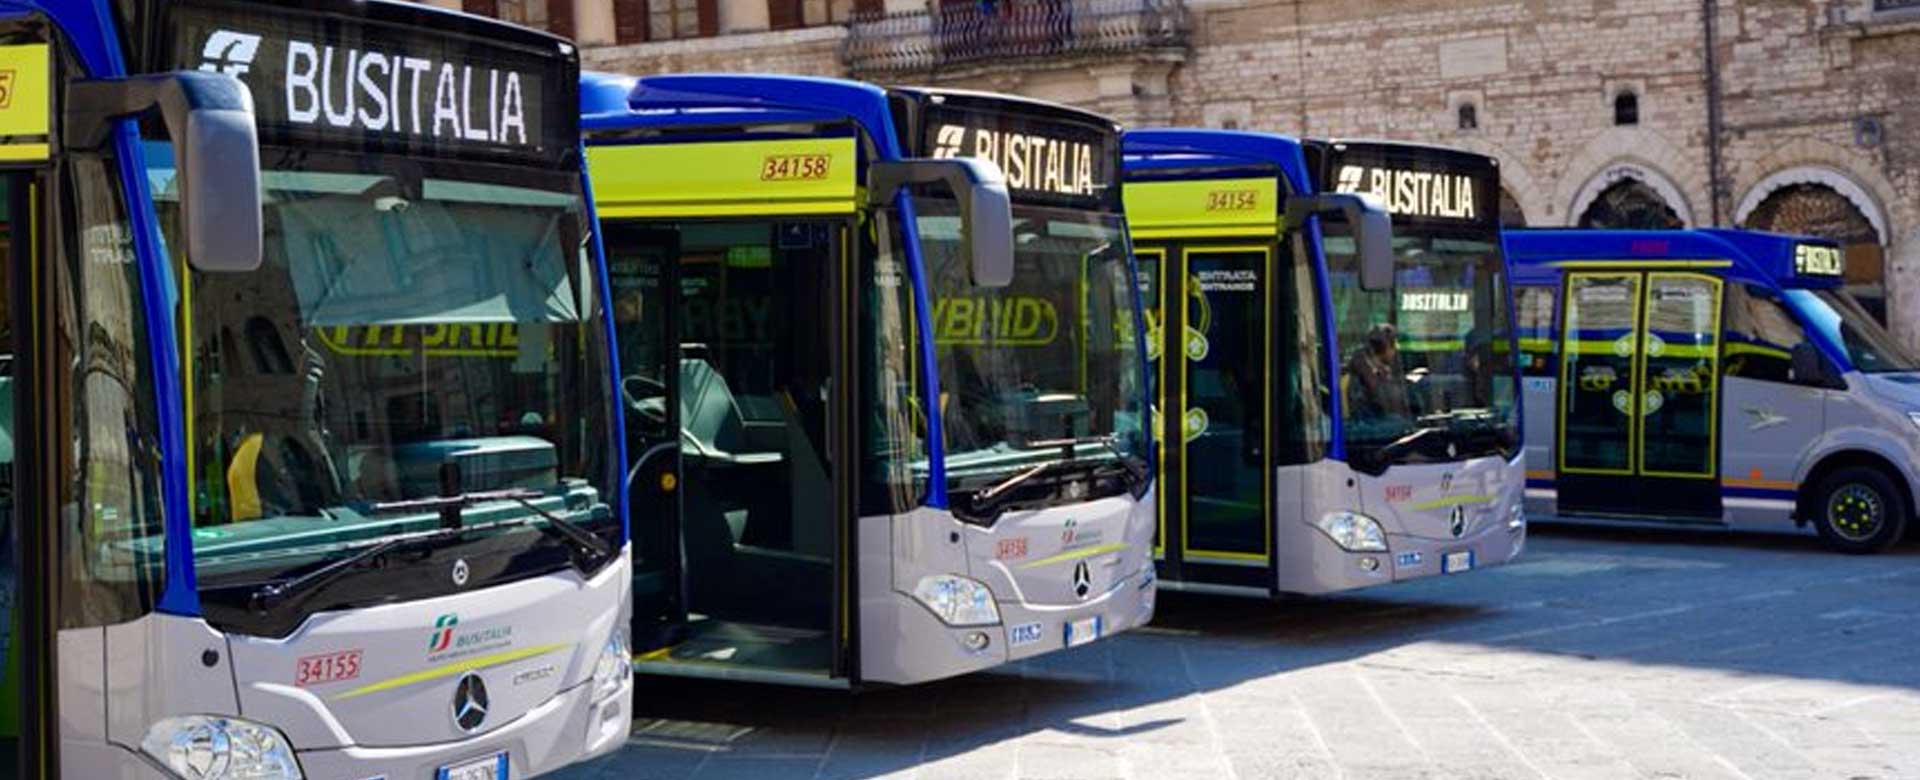 Autobus Busitalia